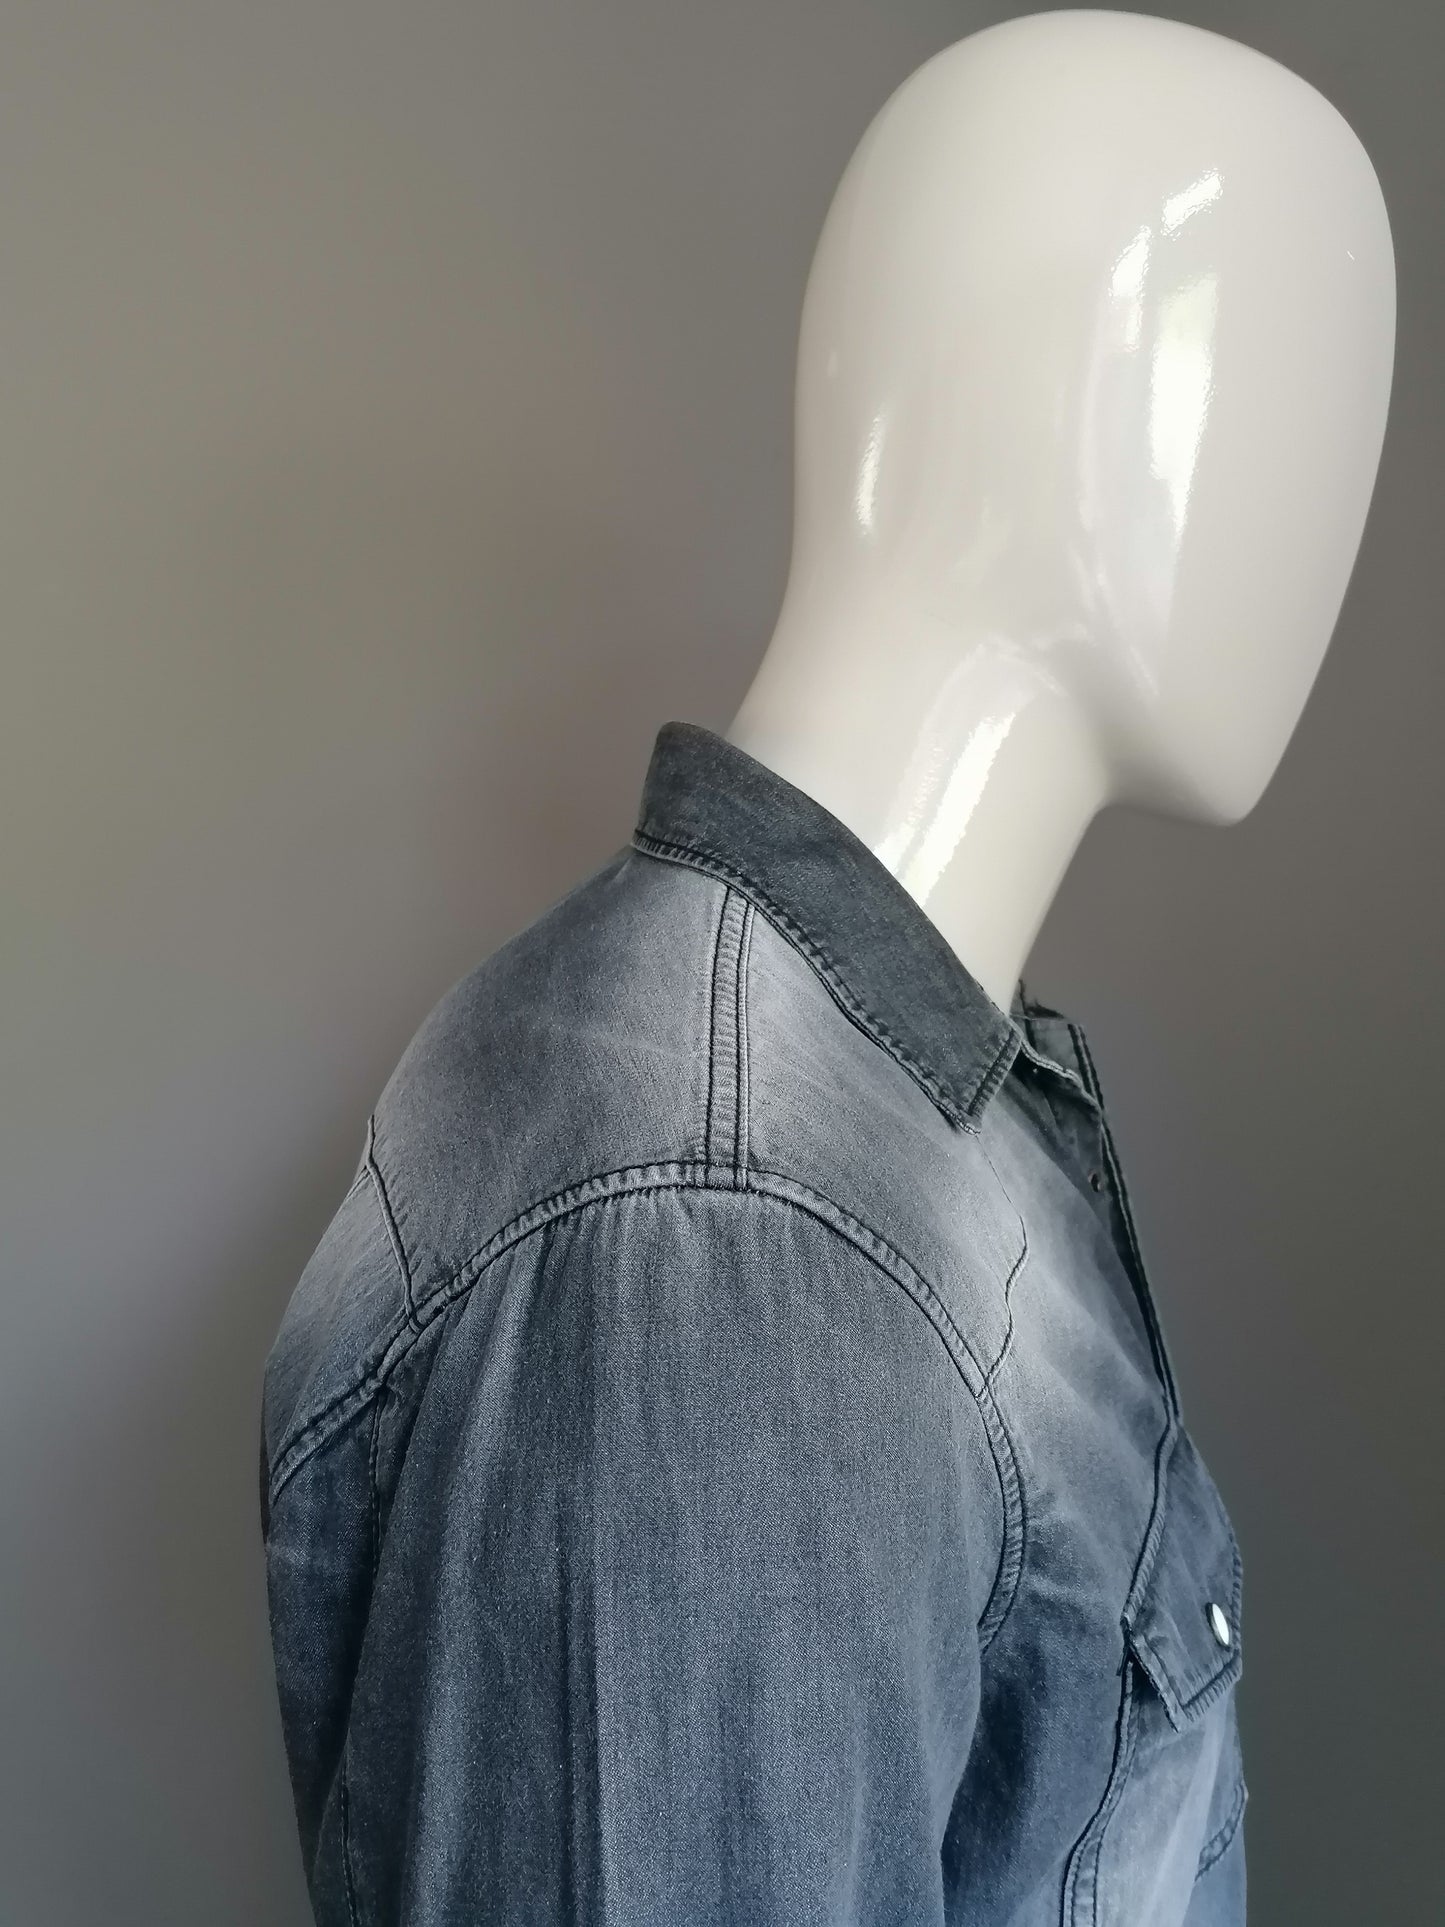 Blue Ridge jeans-look overhemd met drukknopen. Grijs gekleurd. Maat L.